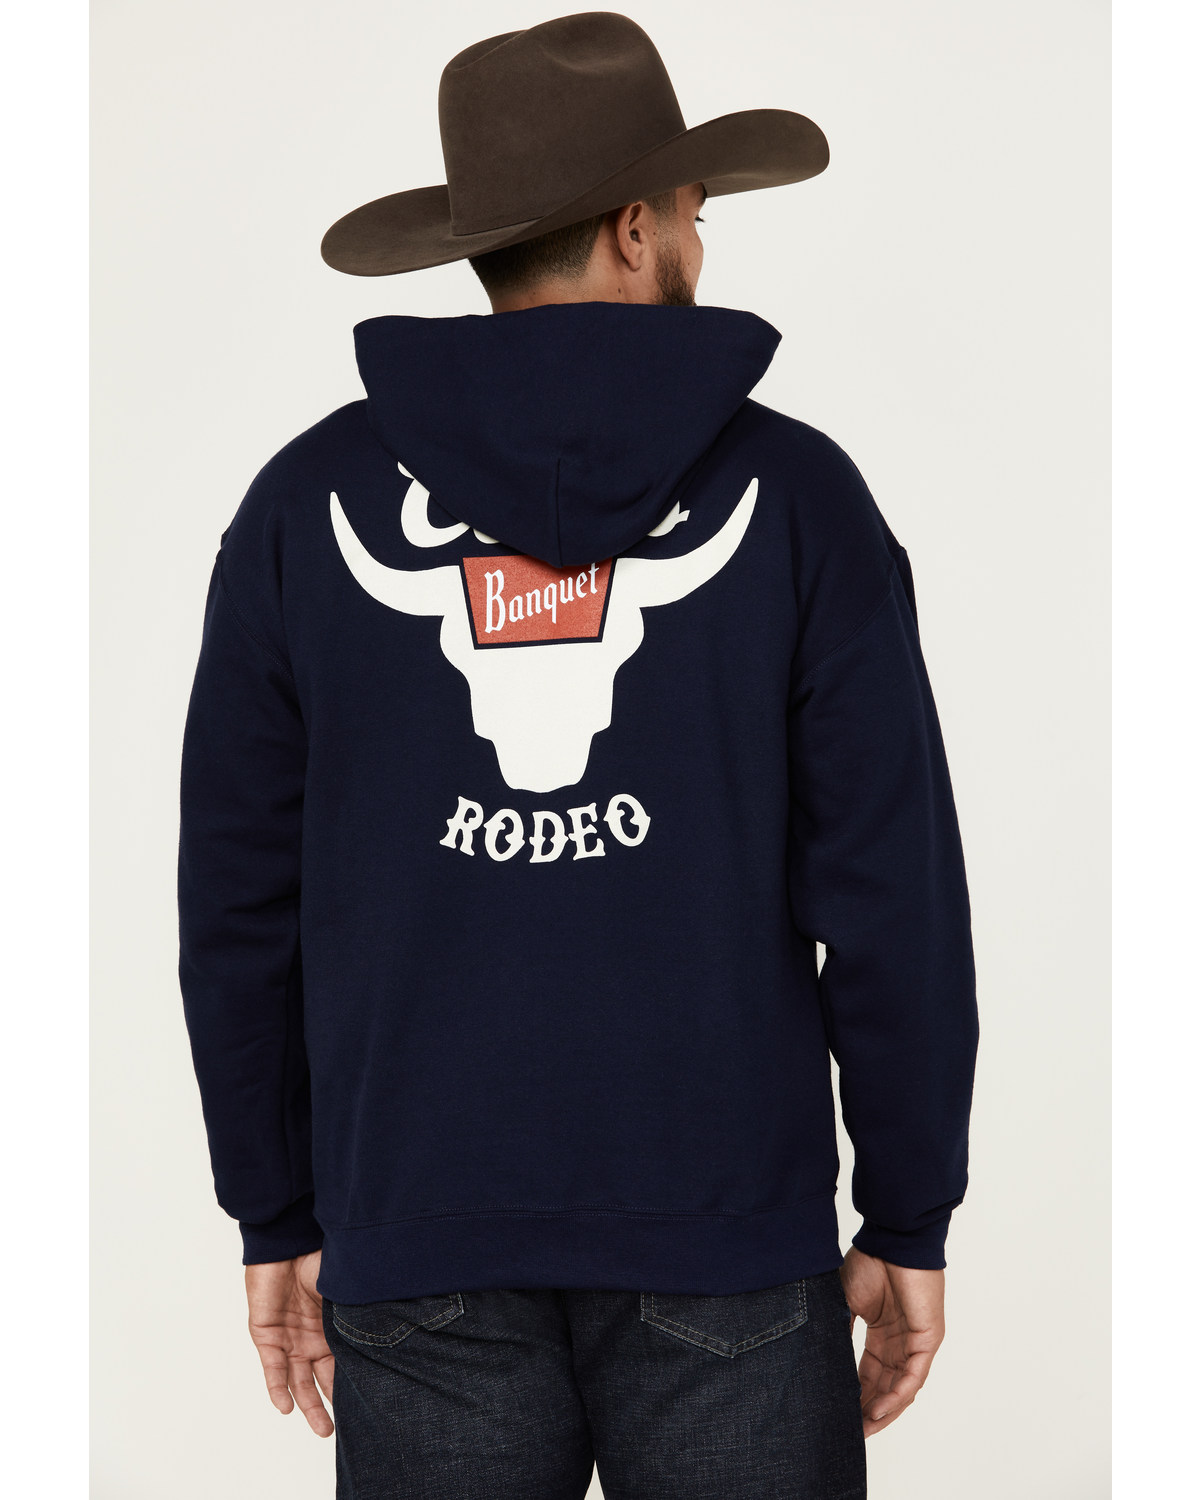 Changes Men's Boot Barn Exclusive Coors Banquet Logo Hooded Sweatshirt